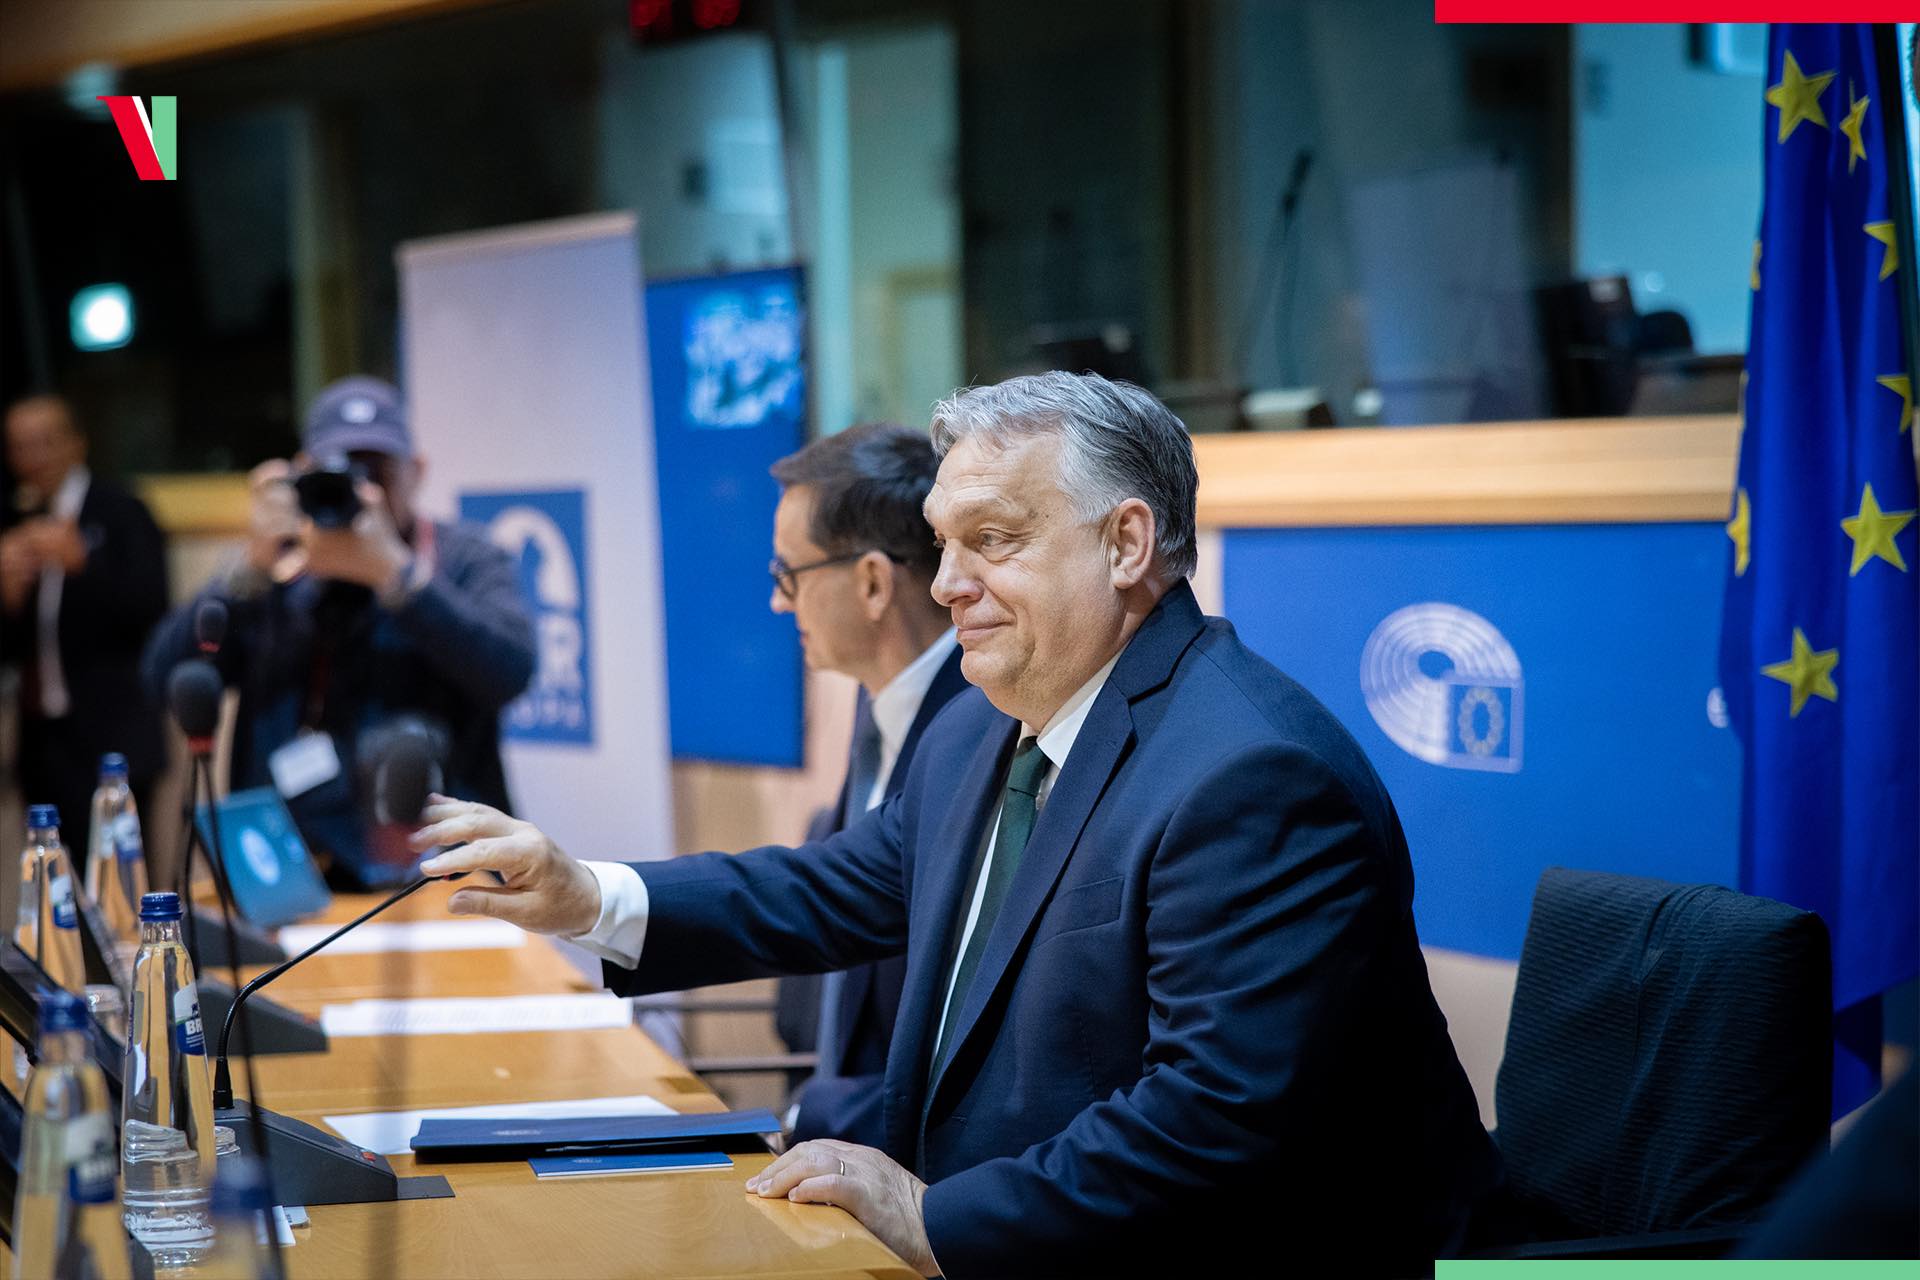 Máshol mondott beszédet Orbán Viktor, miután betiltották a konzervatívok konferenciáját Brüsszelben